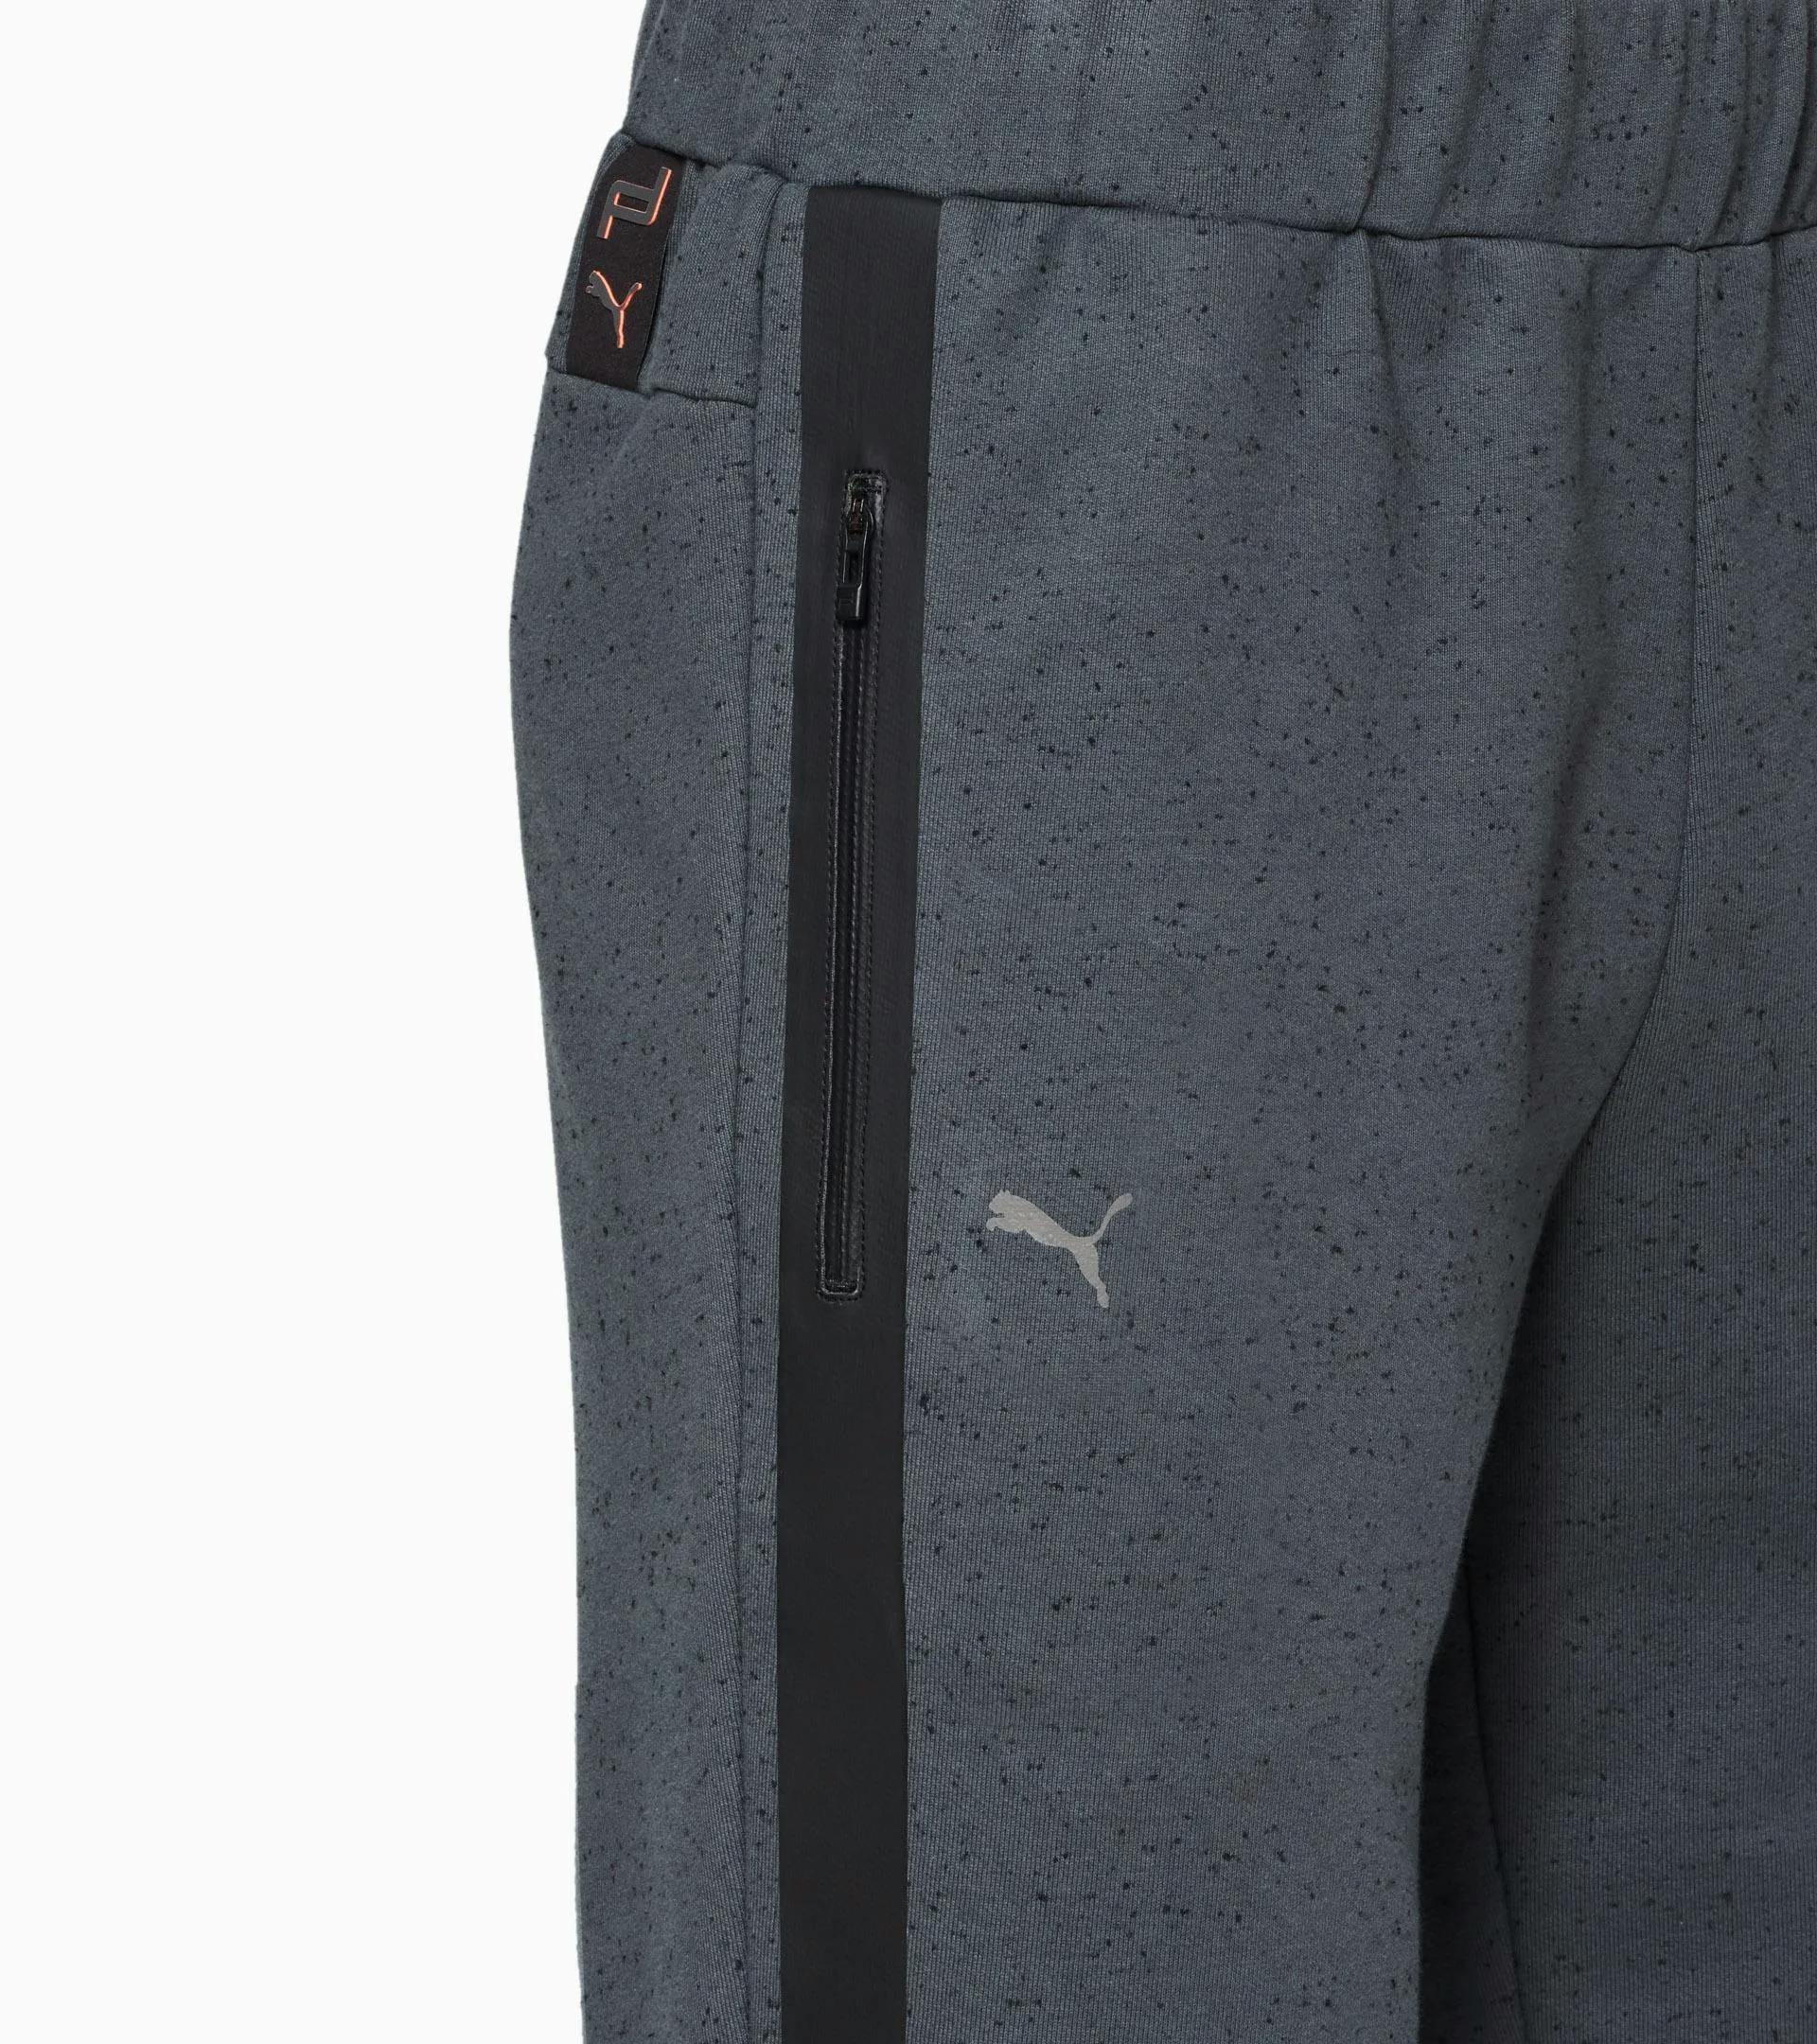 RCT Sweat Pants - Exclusive Sports Pants for Men, Porsche Design